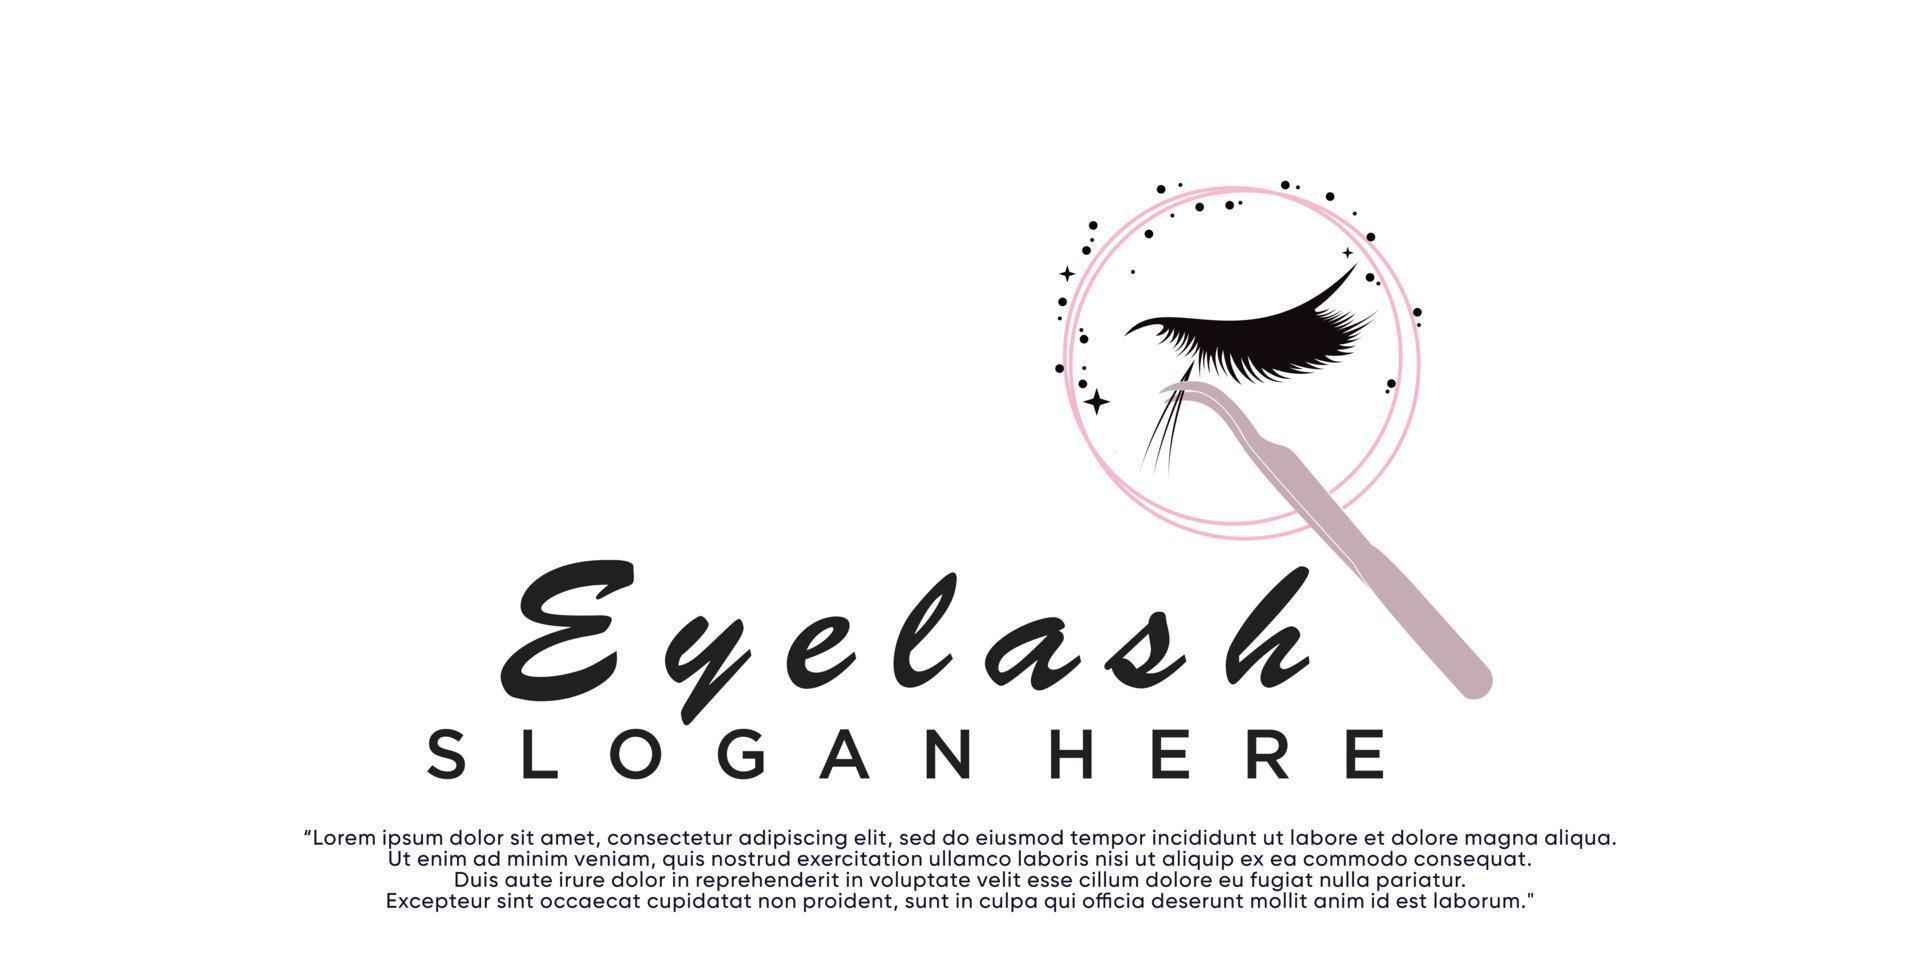 Eye lashes logo design with creative modern concept Premium Vector